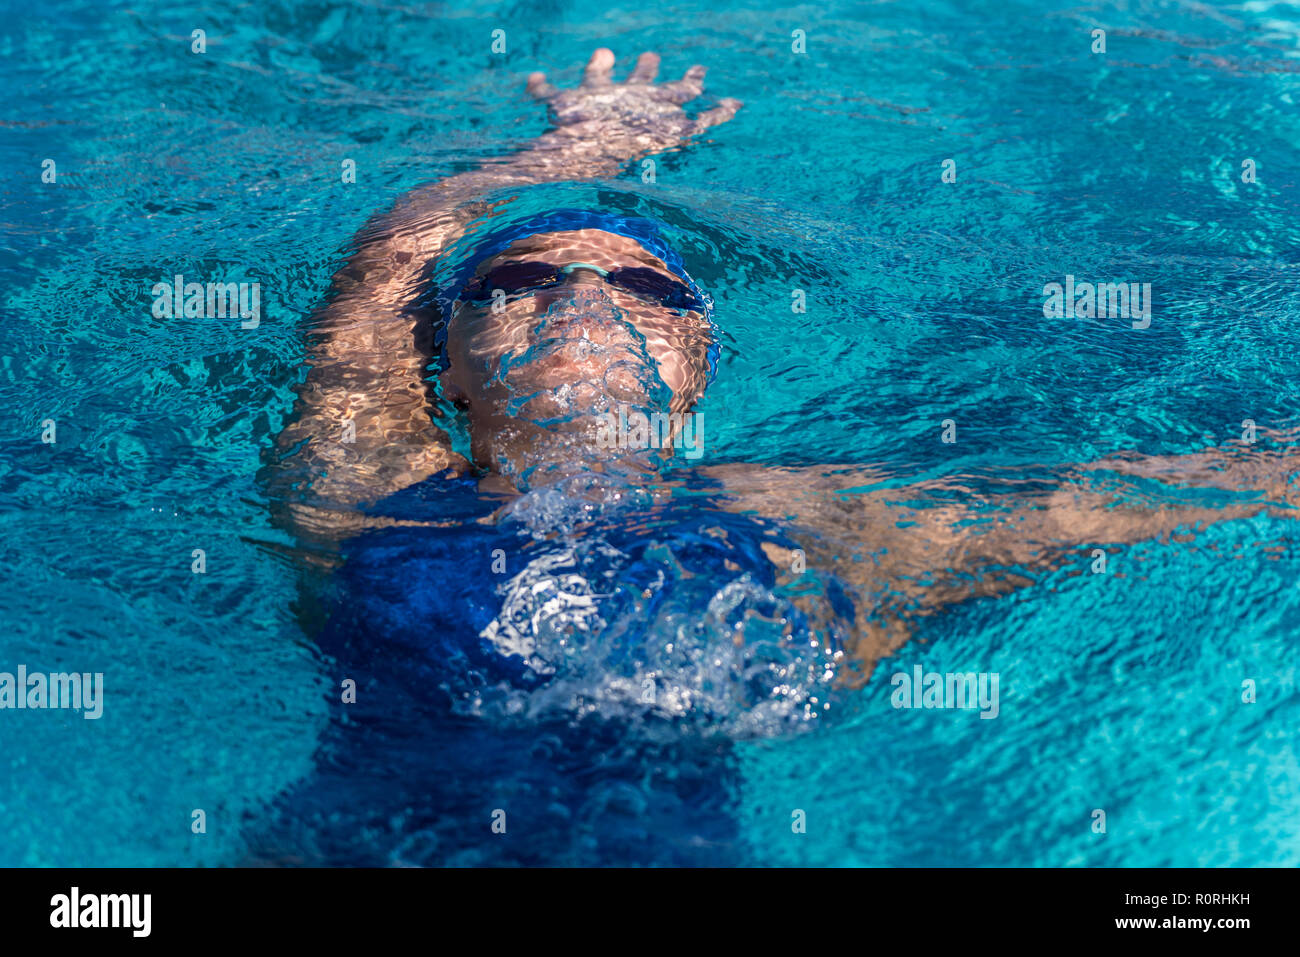 Nuotatore femmina ancora sommersa mentre ascende alla superficie della piscina dopo flip girare durante la nuotata soddisfare gara. Foto Stock